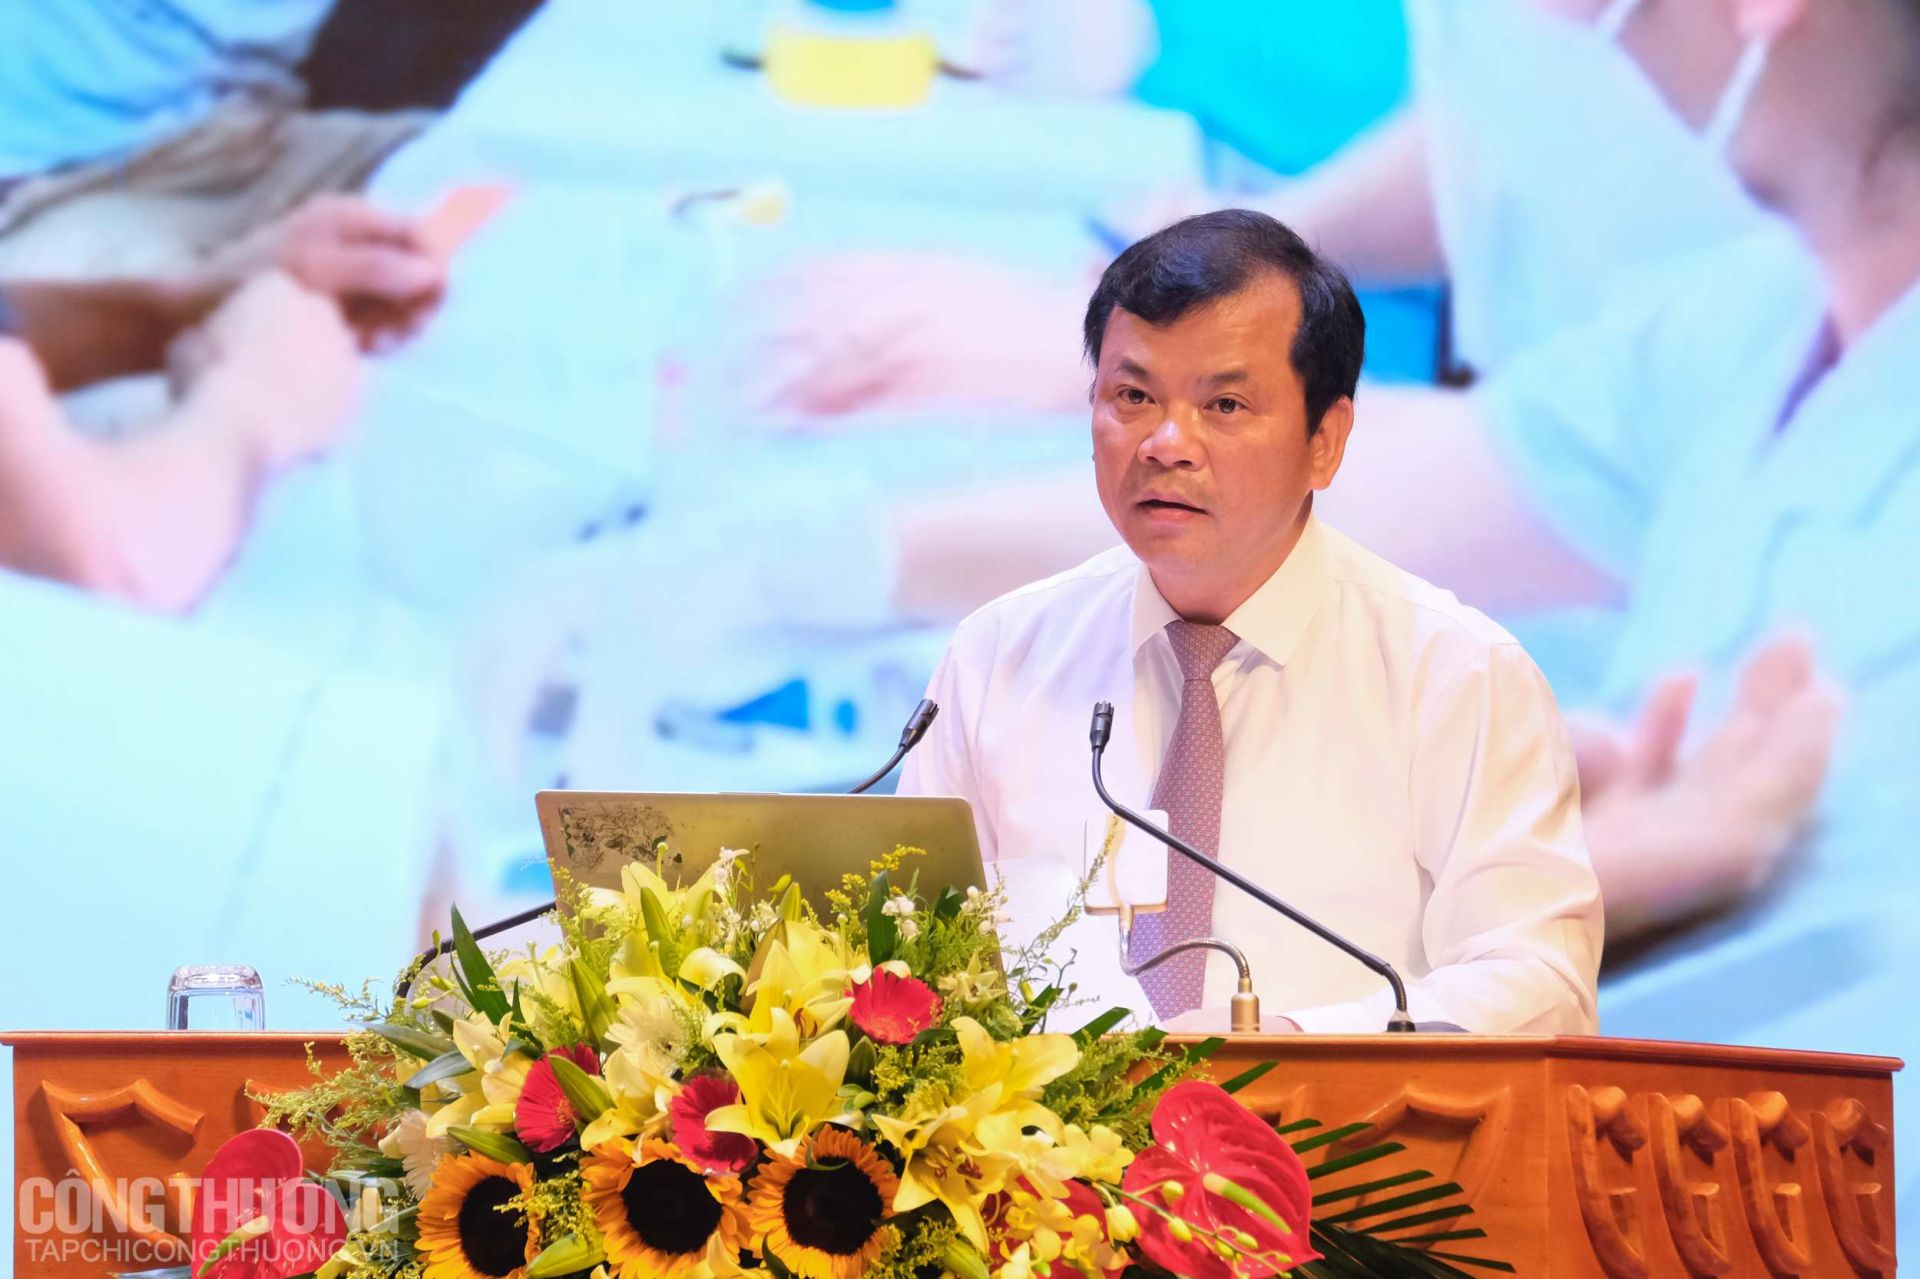 Ông Phan Thế Tuấn - Phó Chủ tịch UBND tỉnh Bắc Giang phát biểu chiêu thương và giới thiệu mùa vụ vải thiều năm 2021 tại Hội nghị